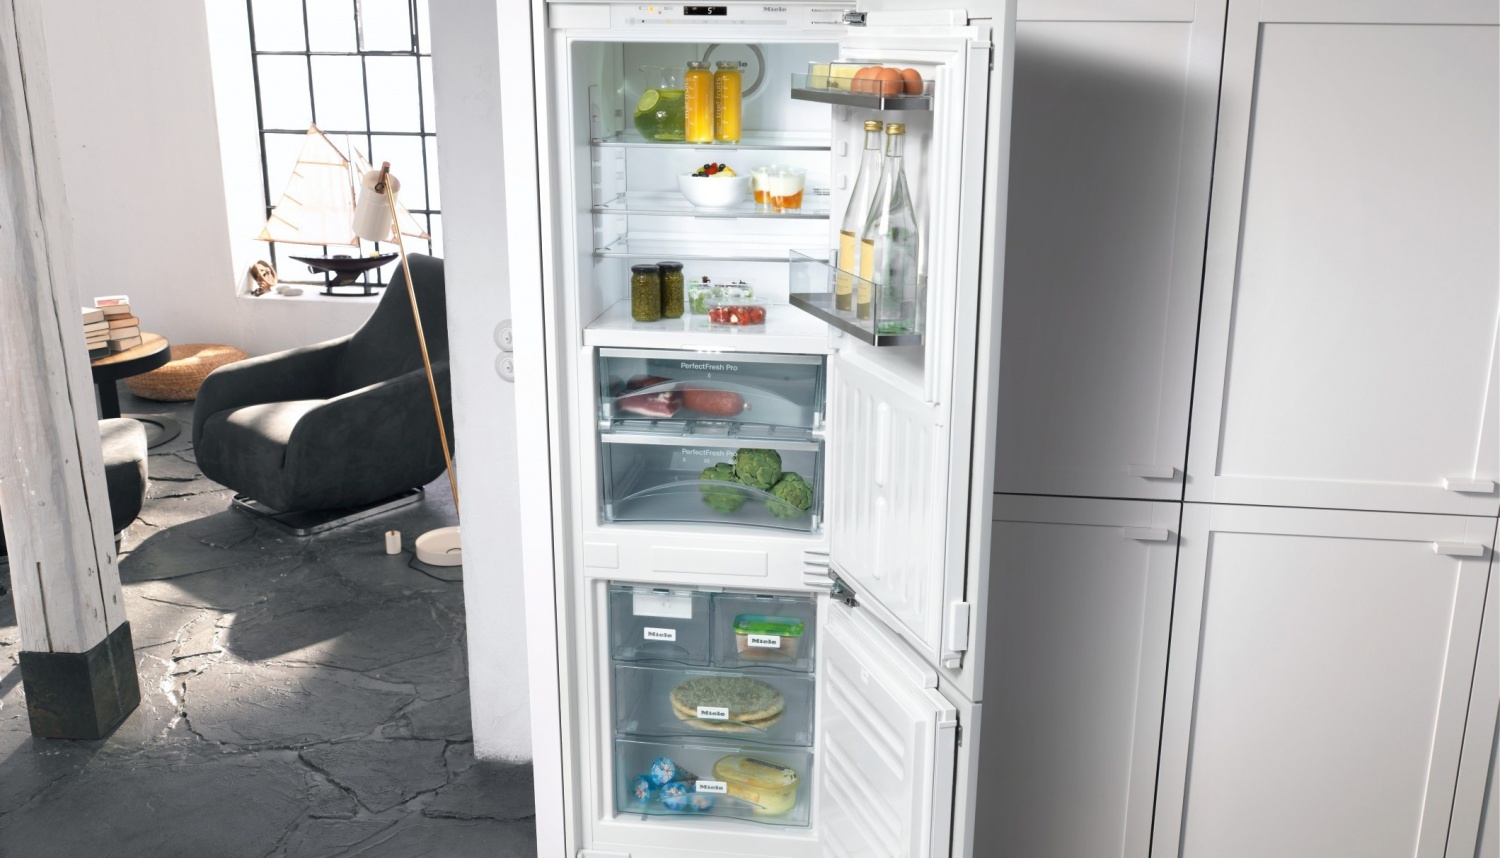 Компания Miele предлагает широкий выбор новых встраиваемых холодильников и холодильно-морозильных комбинаций - Техникамиеле.москва